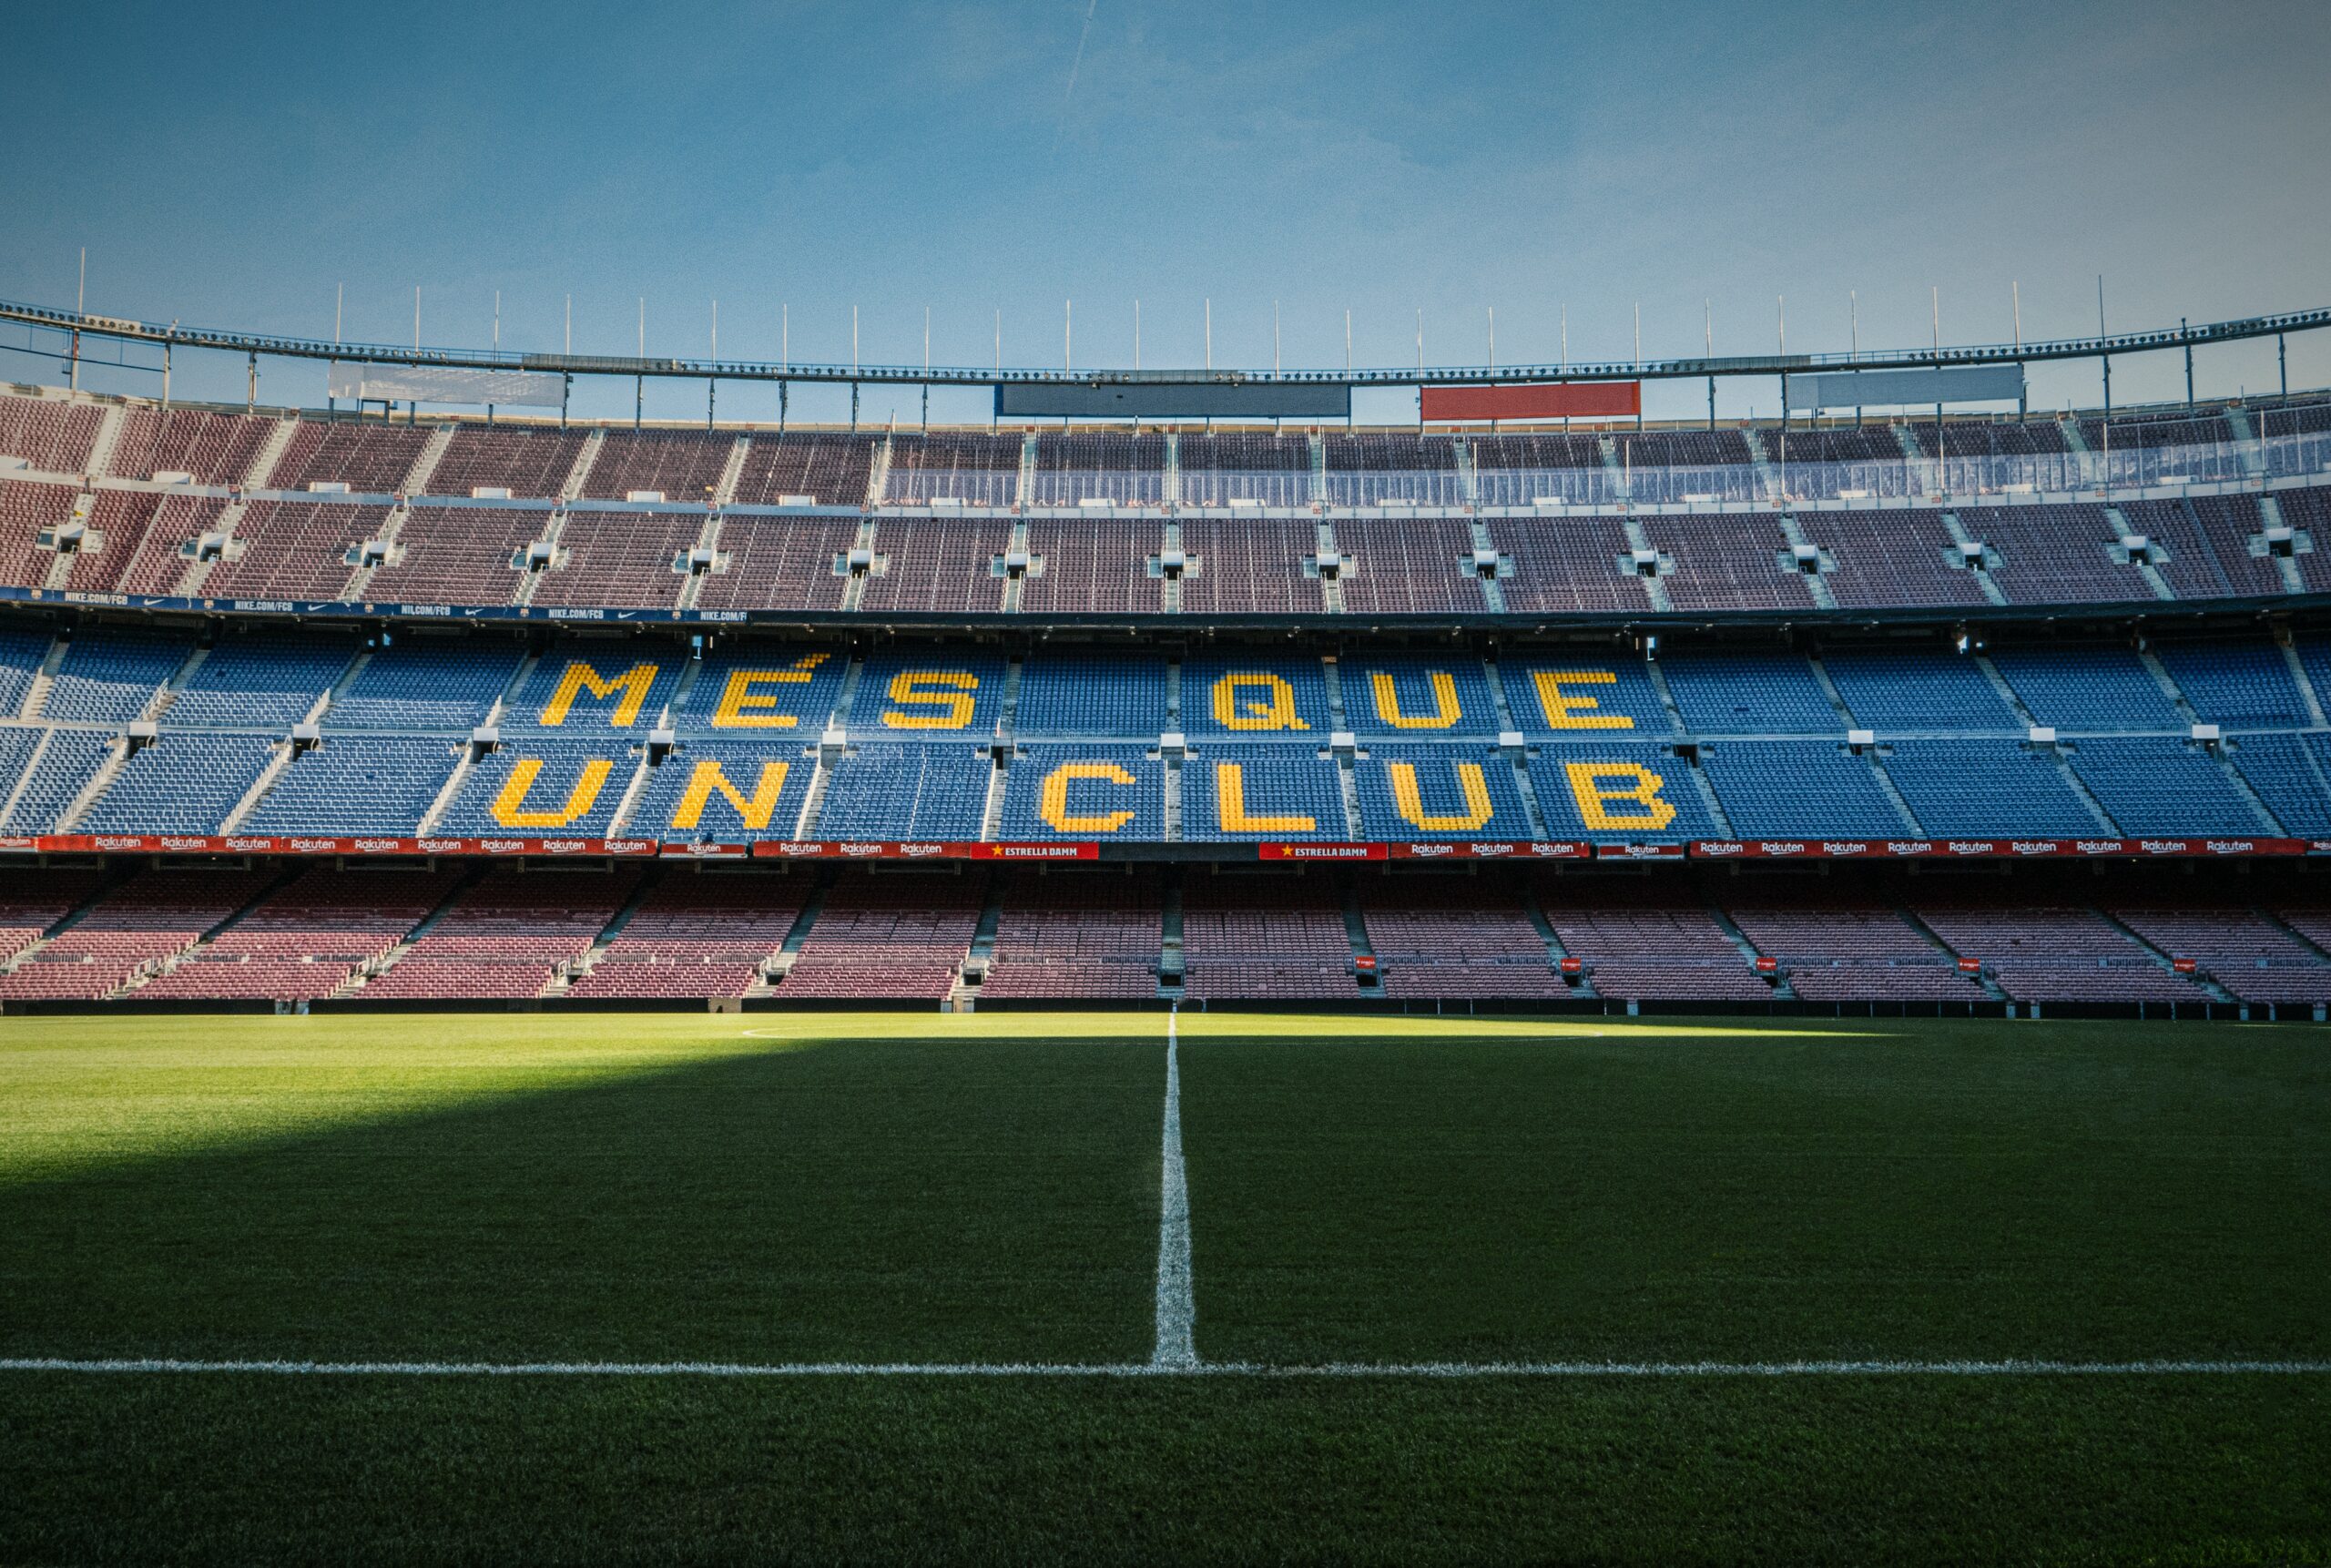 stadion barcelona unsplash.com